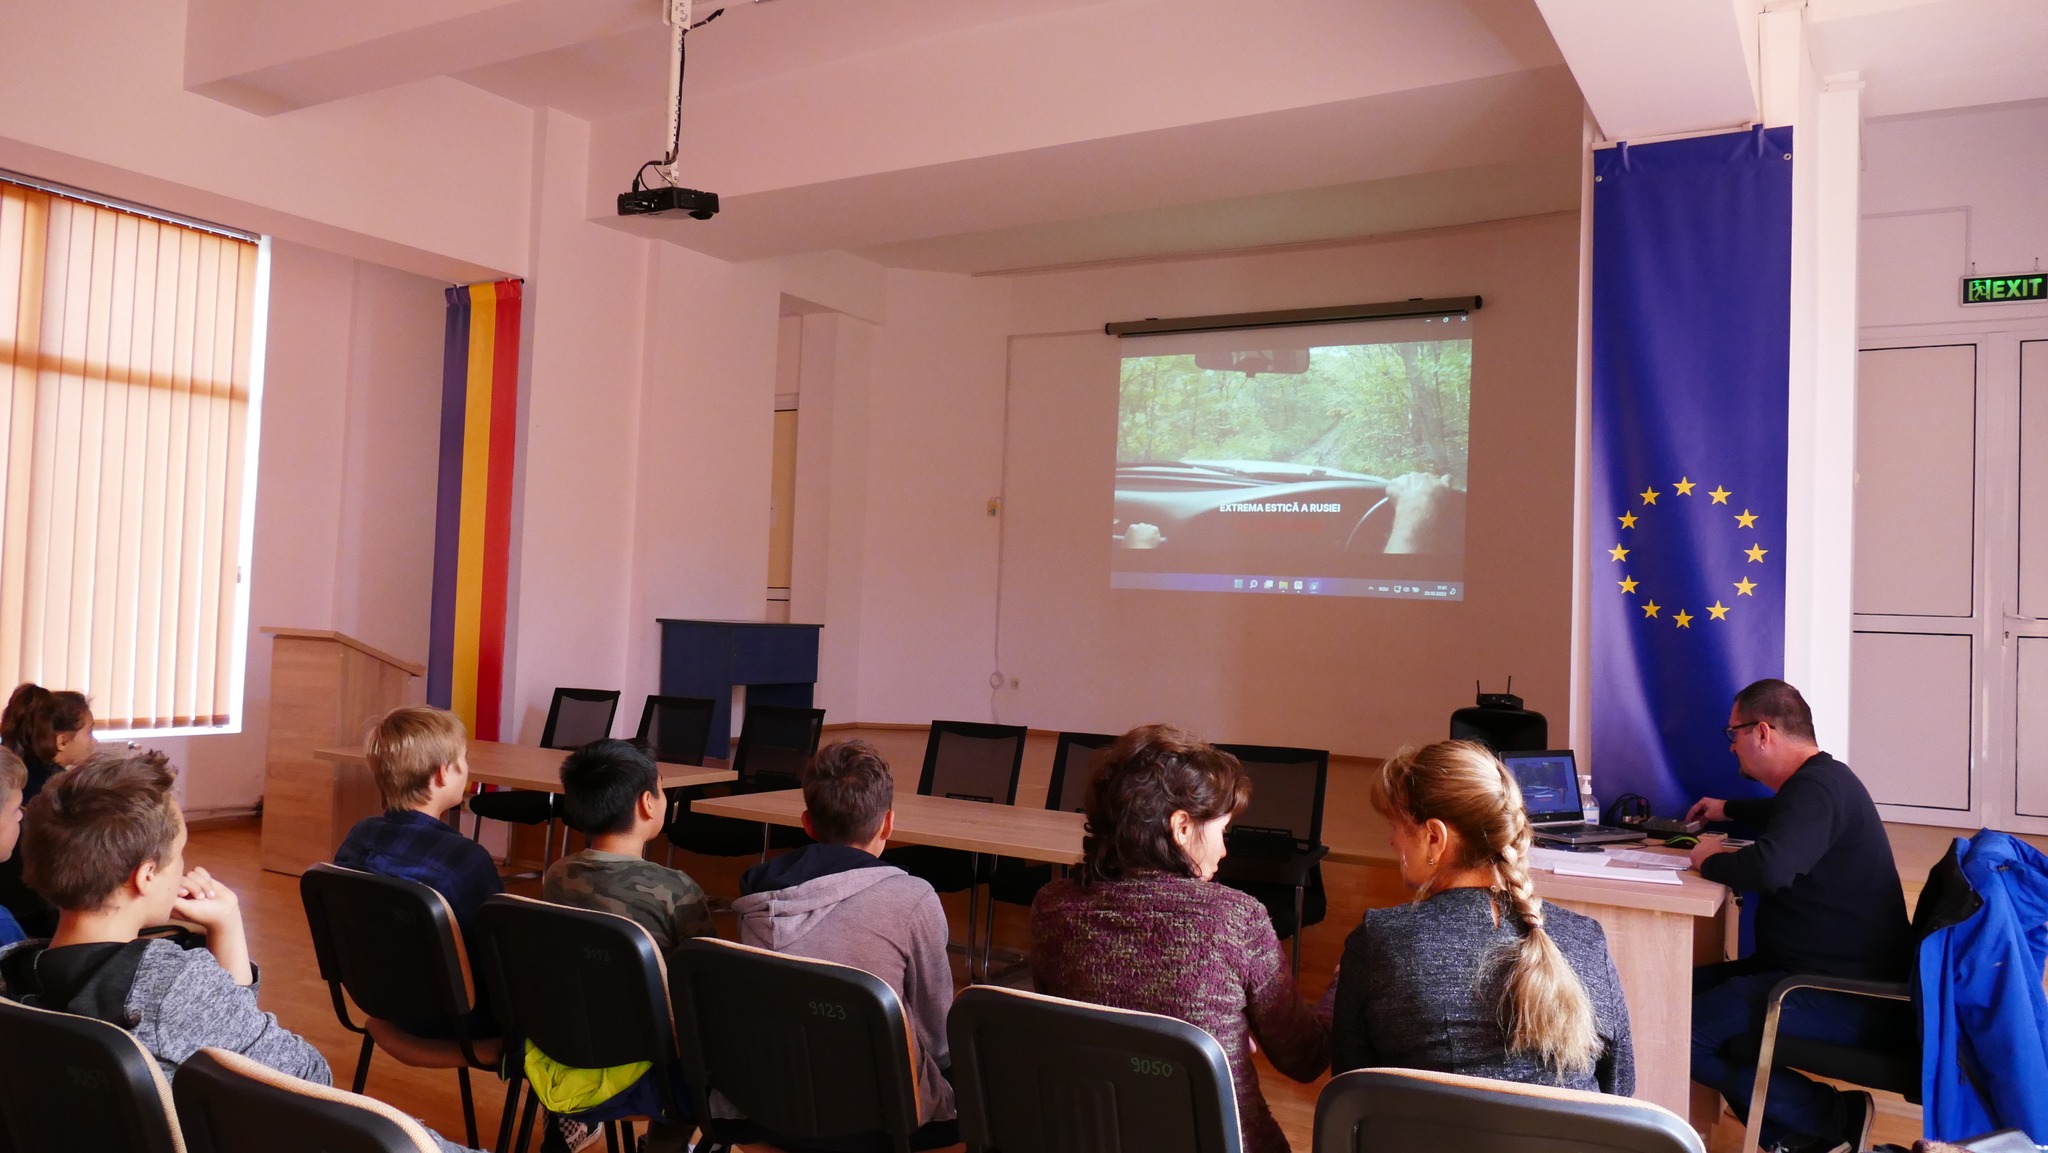 Educație media printr-un „docu-thriller de mediu”, azi, la Biblioteca Județeană din municipiu